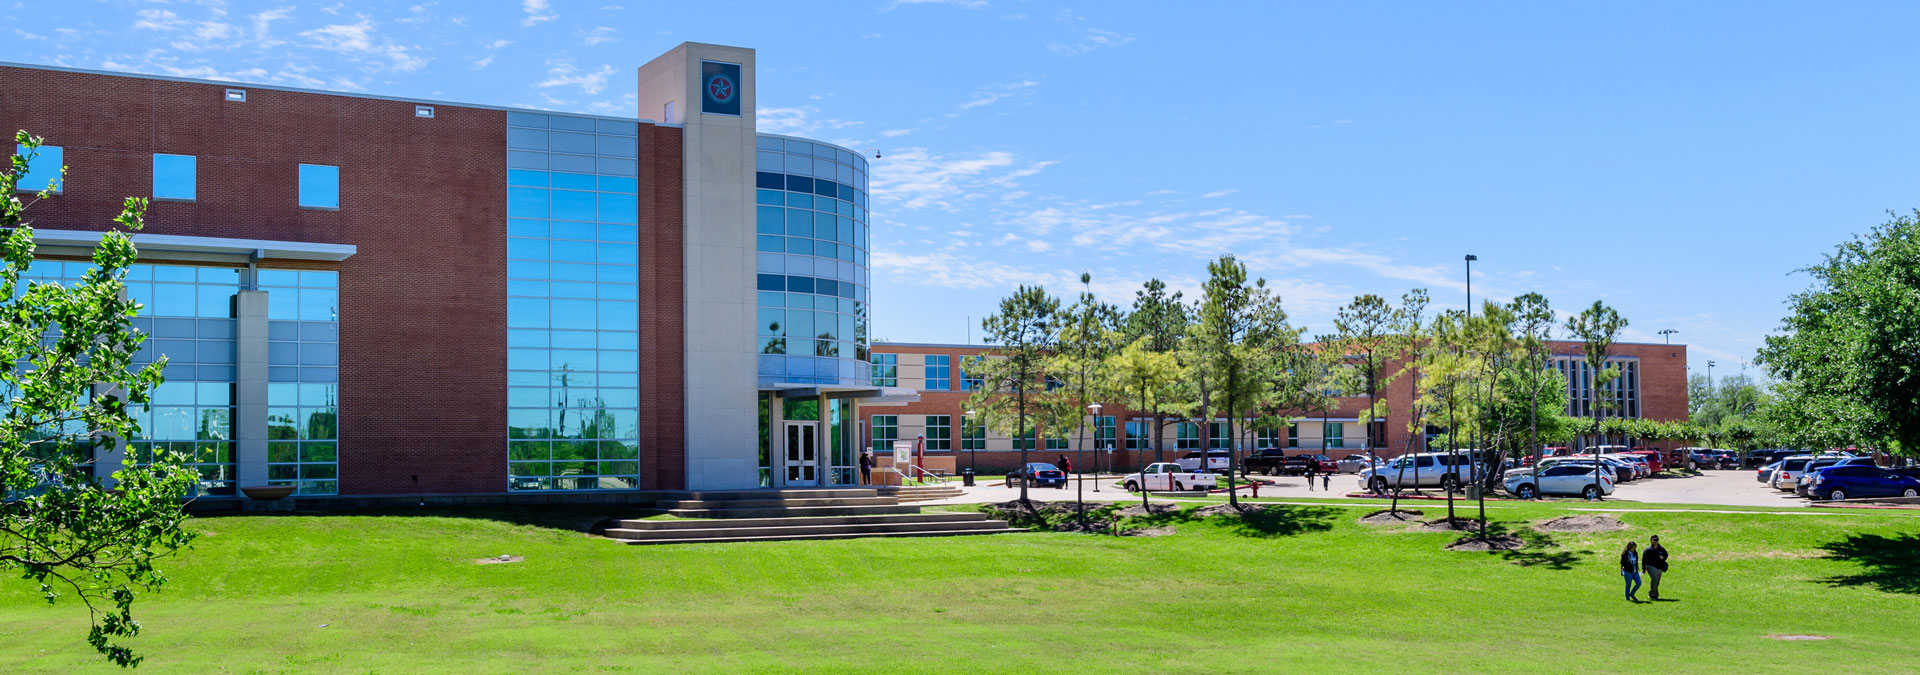 Lee College – Texas Gulf Coast Consortium of Community Colleges